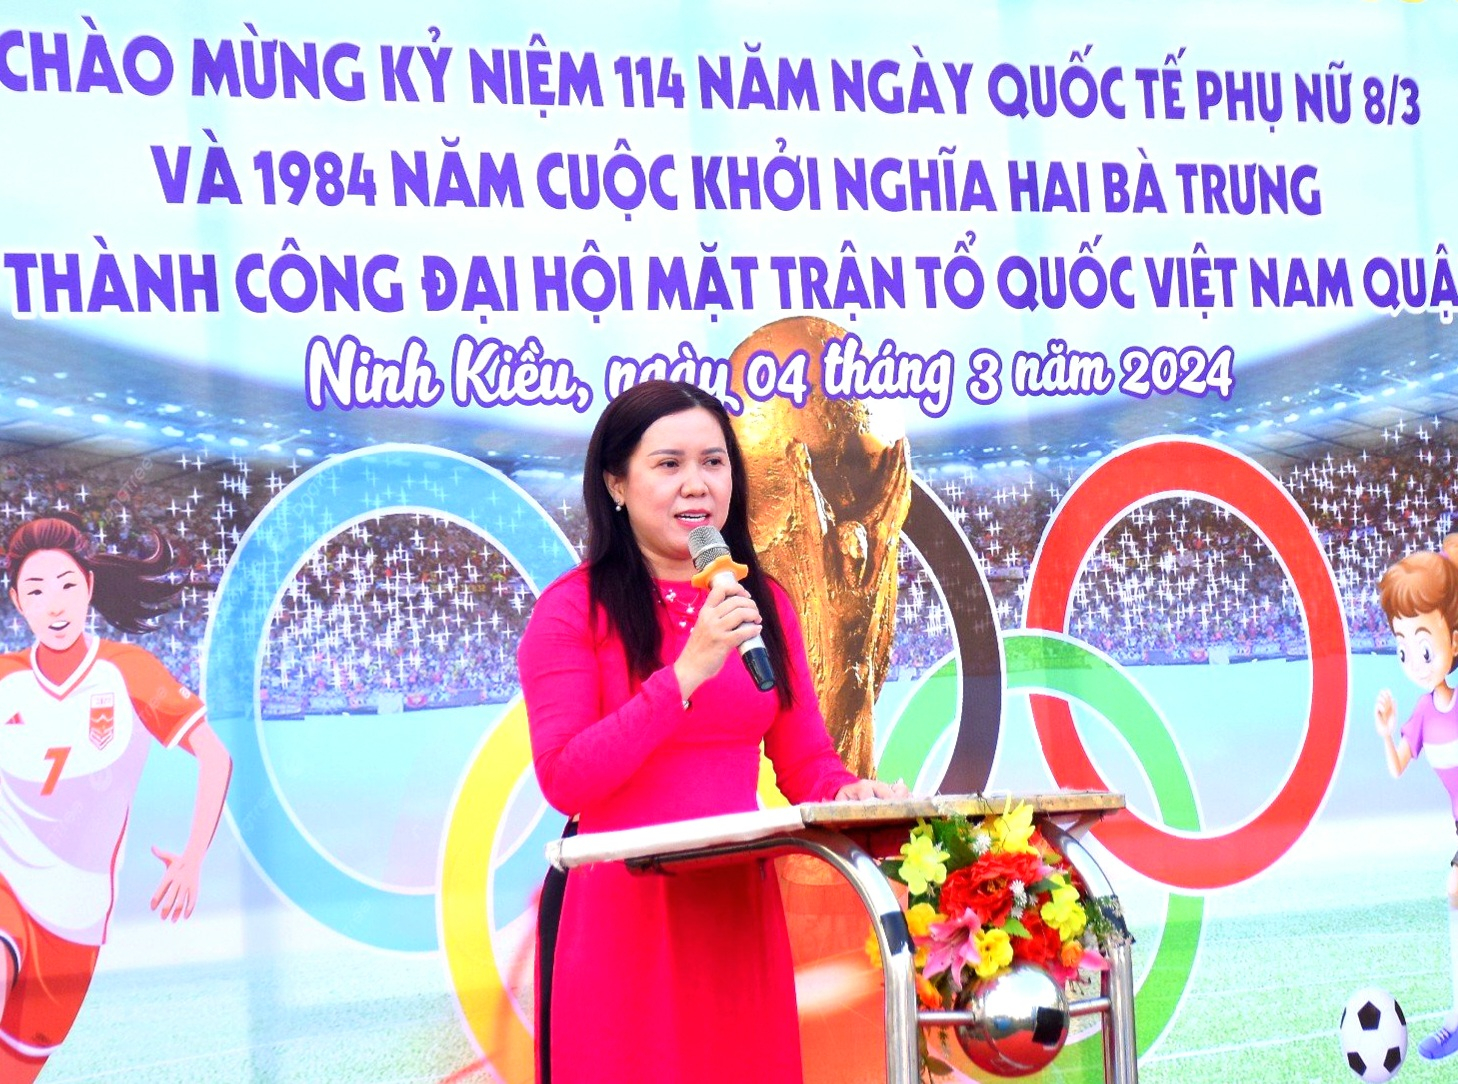 Bà Nguyễn Thị Hồng Nga - Chủ tịch Hội LHPN quận Ninh Kiều phát biểu khai mạc giải.